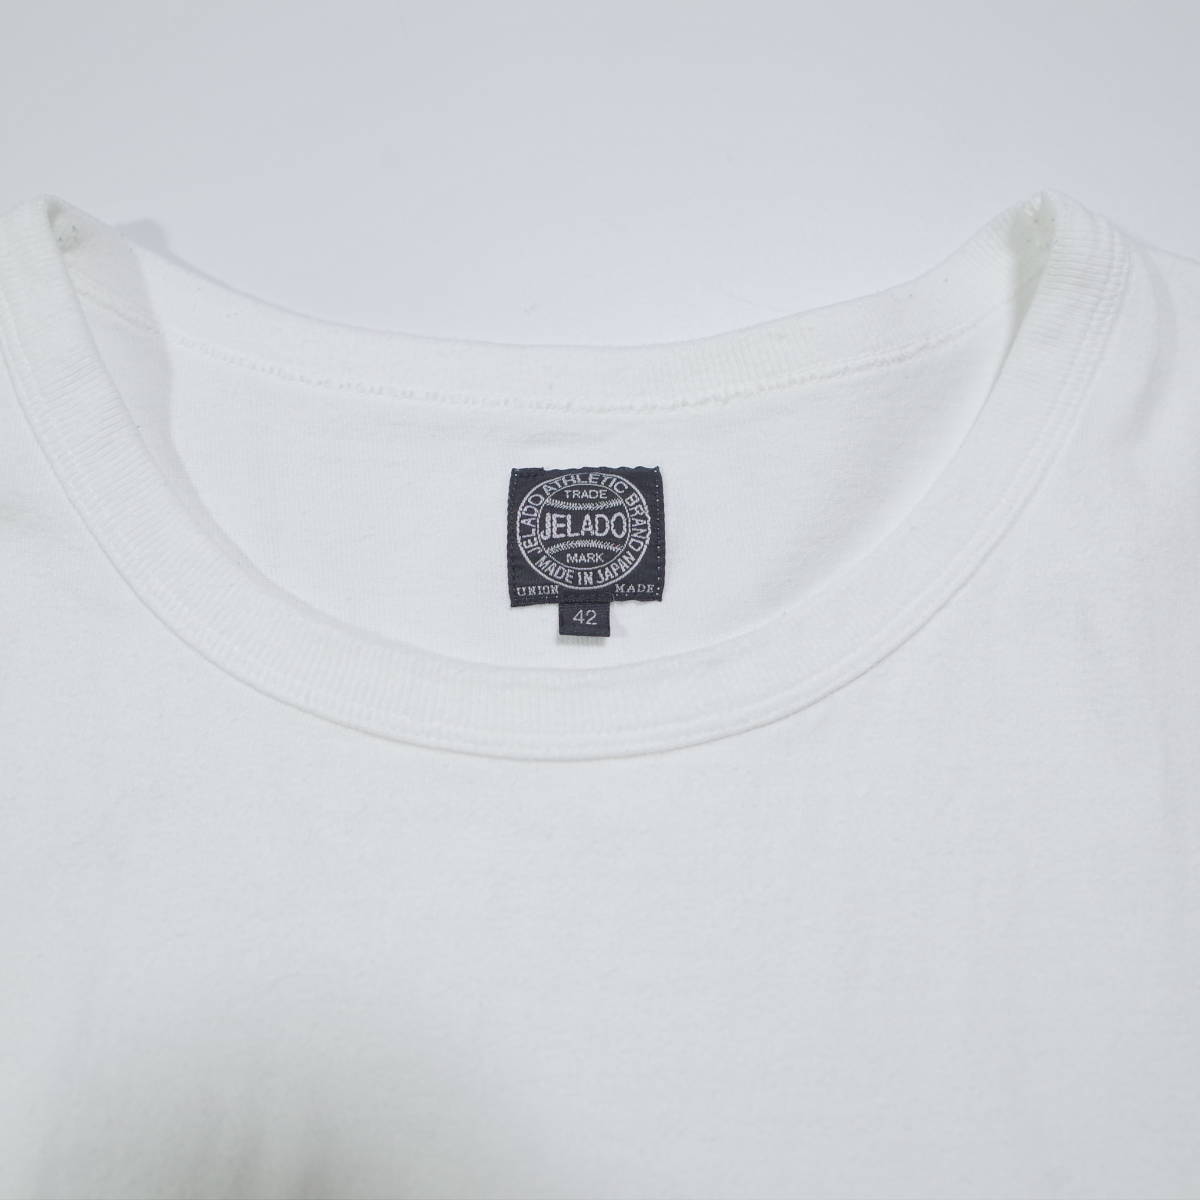 送料無料 JELADO Vintage Neck(ヴィンテージネック) Tee ジェラード Tシャツ 42 ホワイト 白T_画像3